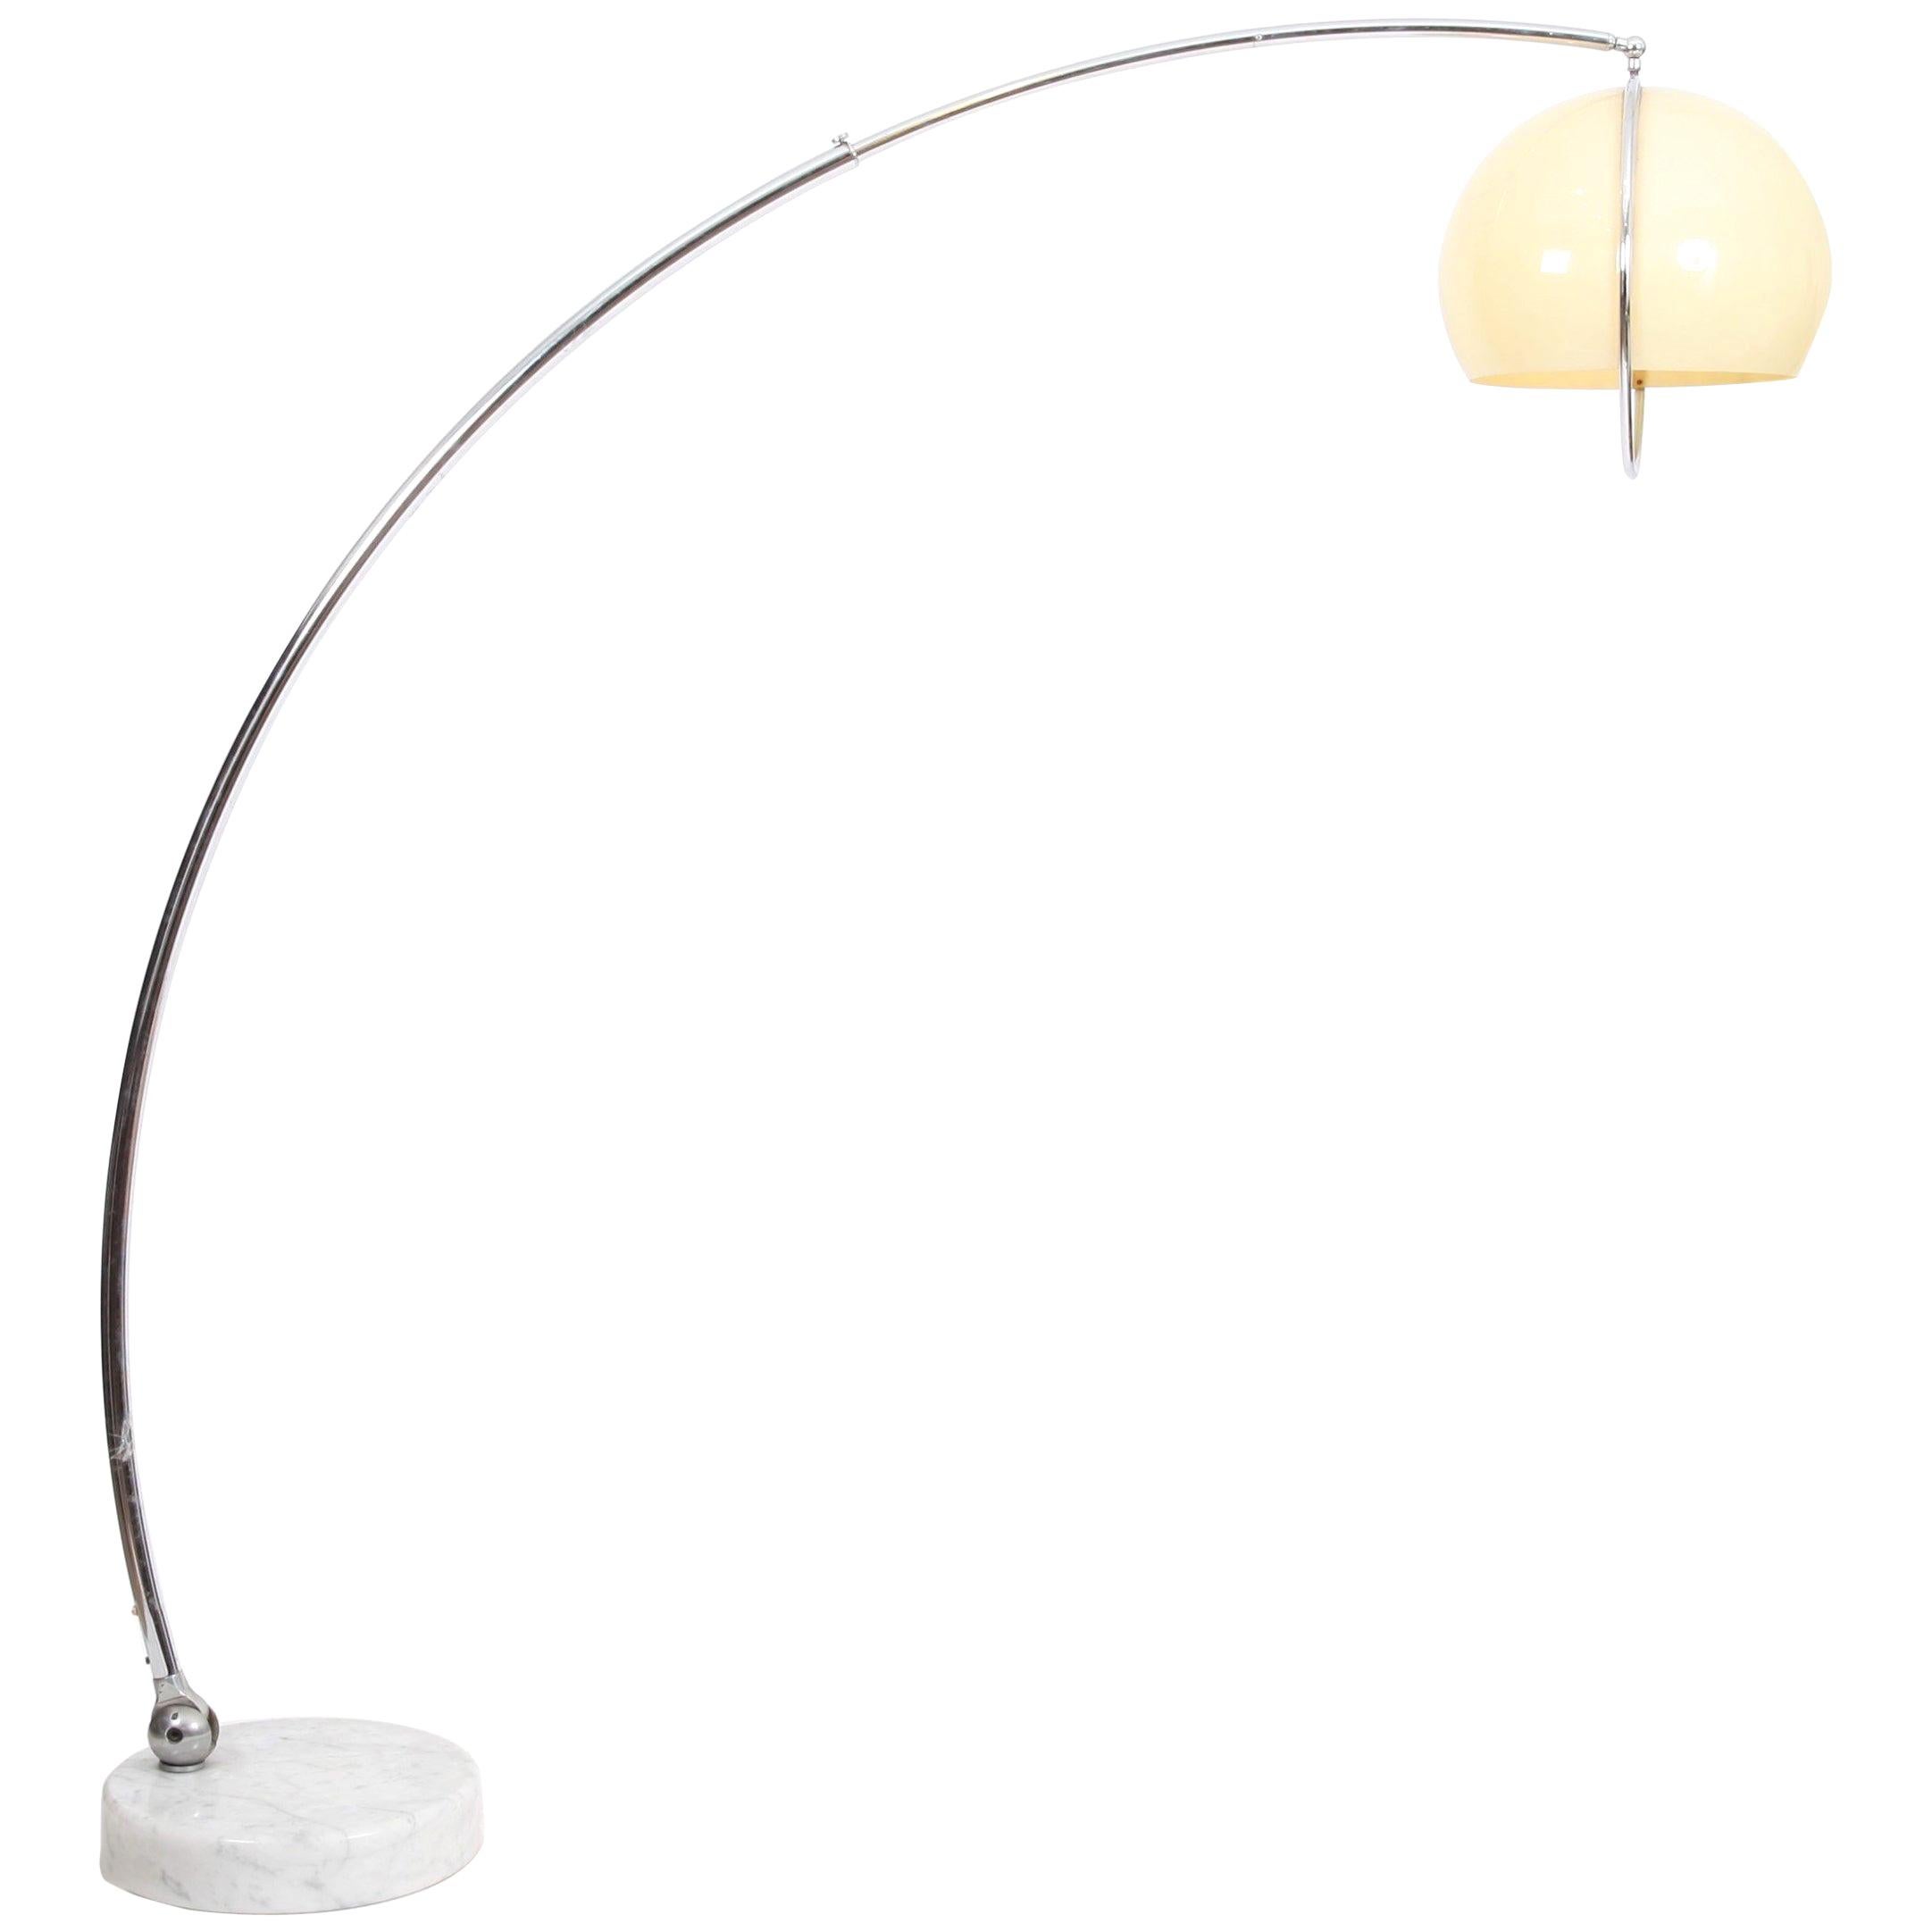 How do I choose an arc floor lamp?